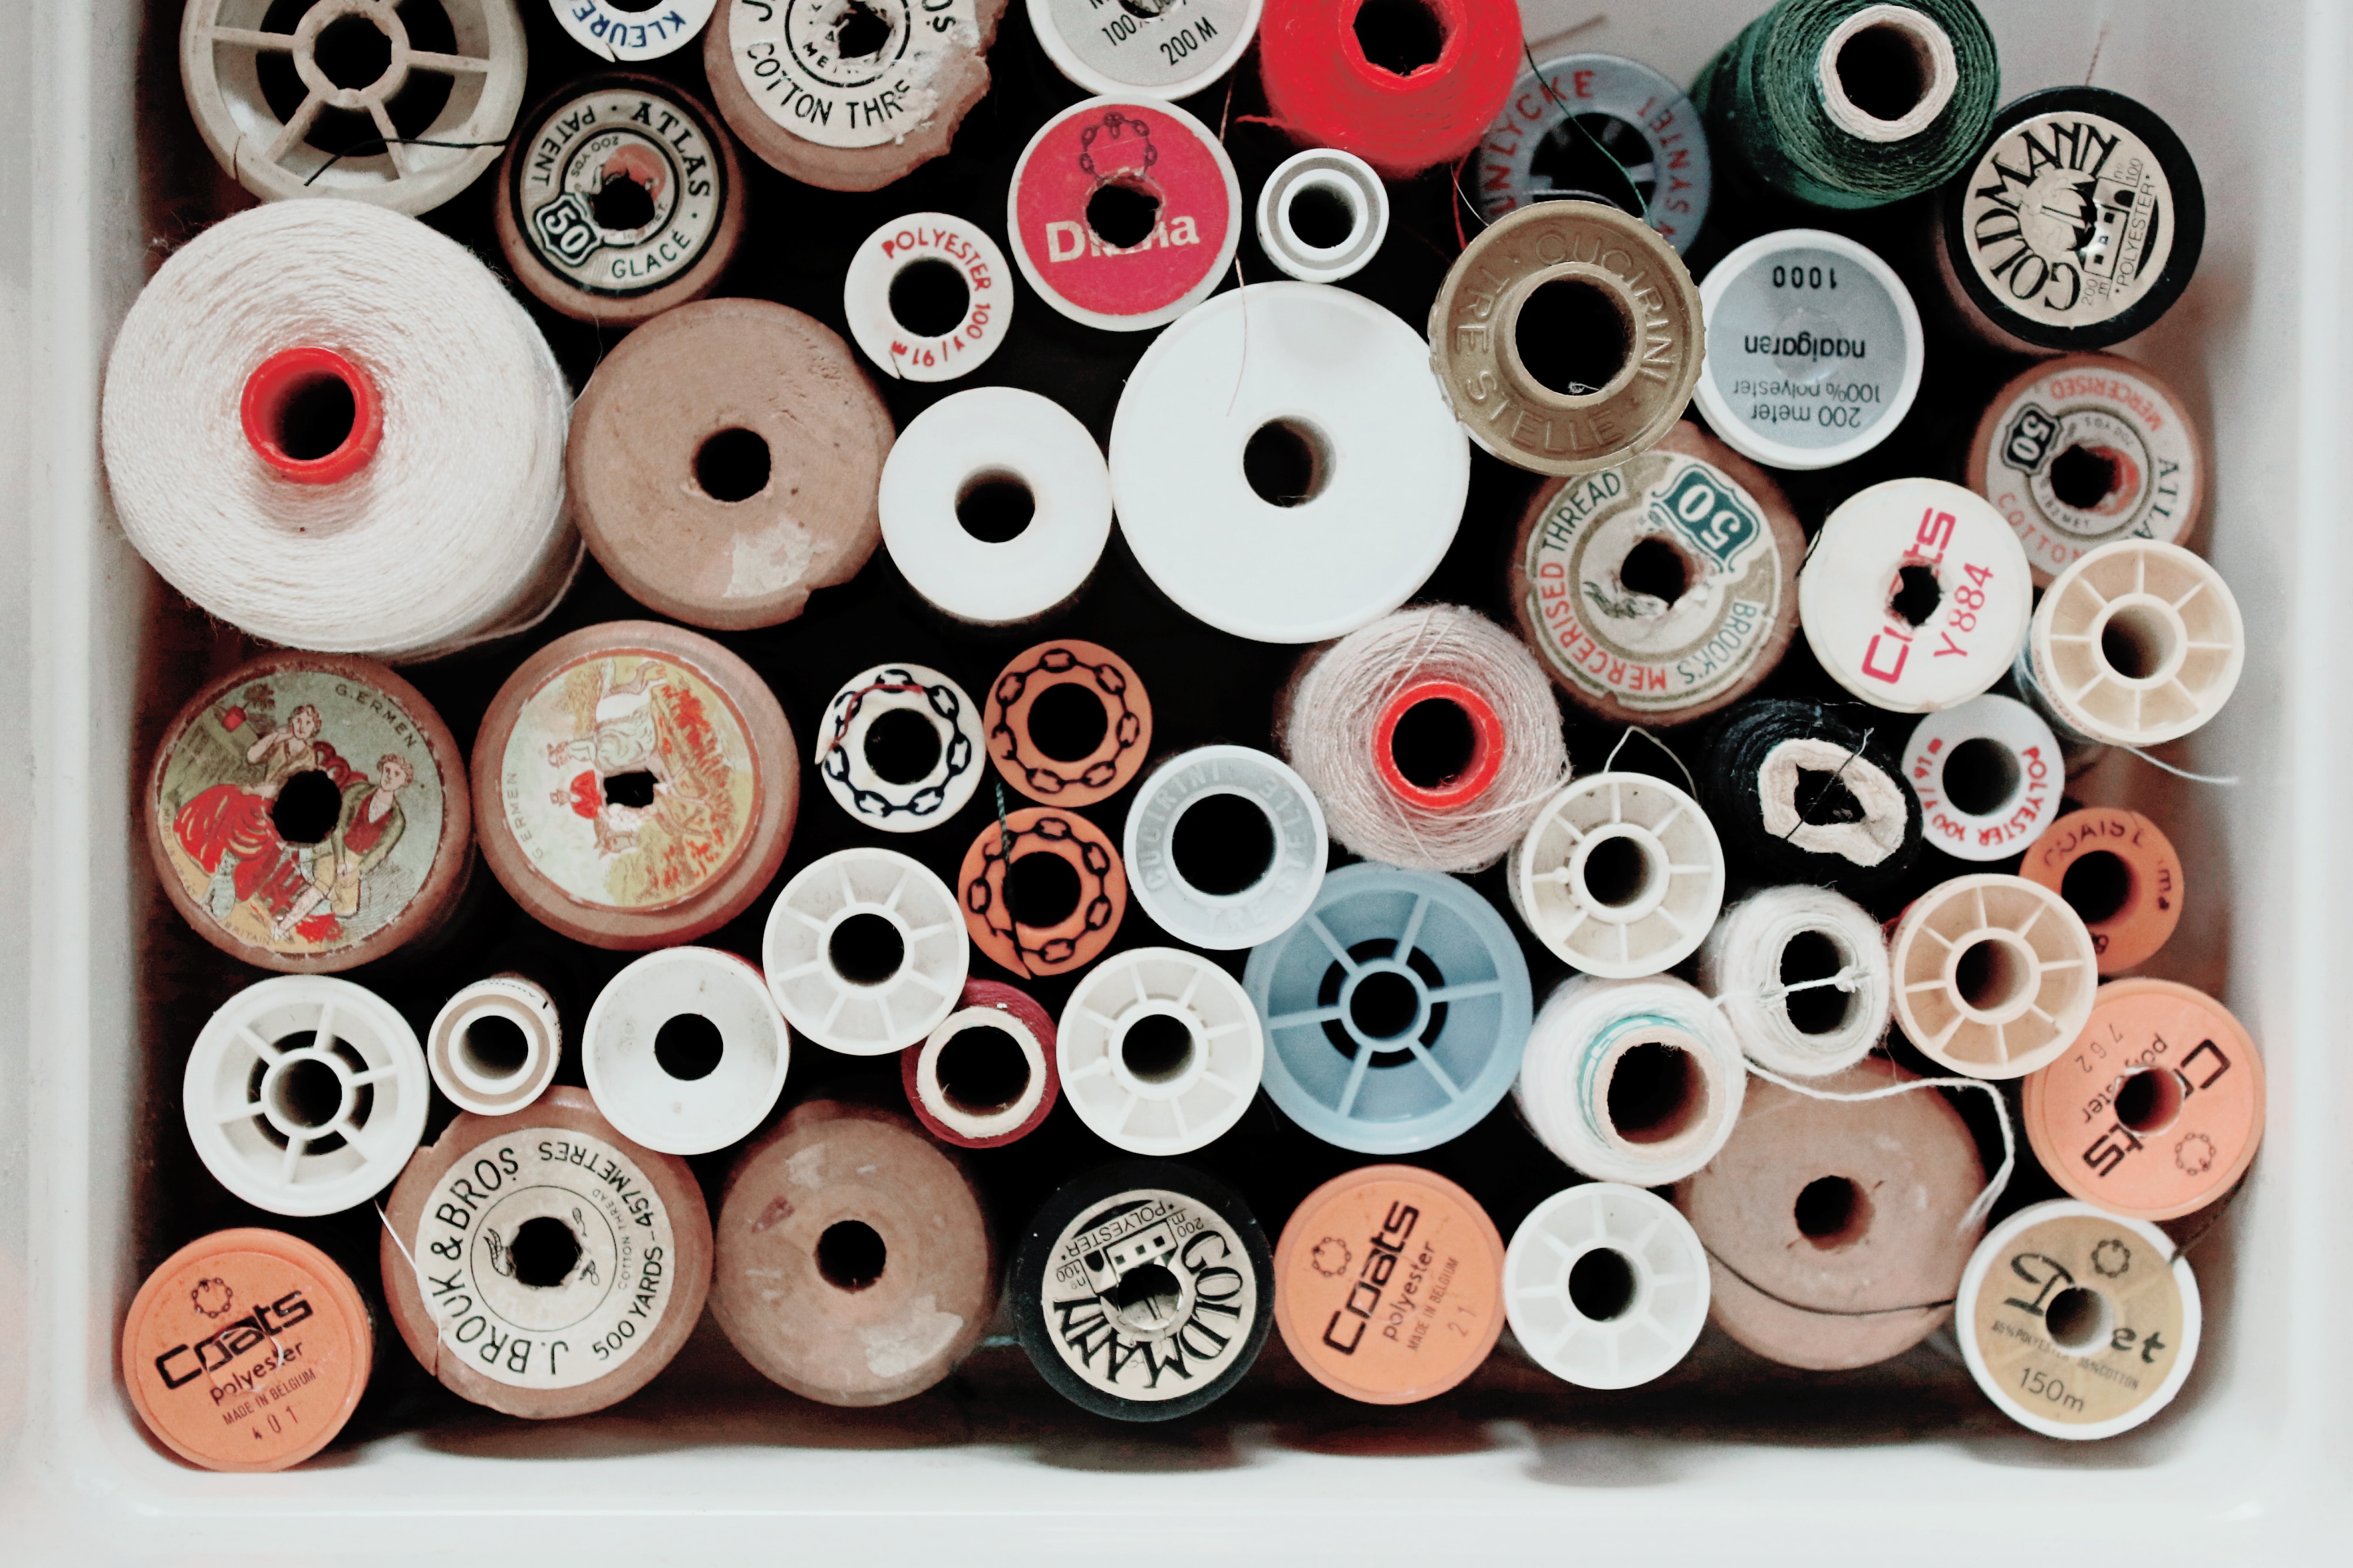 Insights into future scenarios for the Textiles revolution